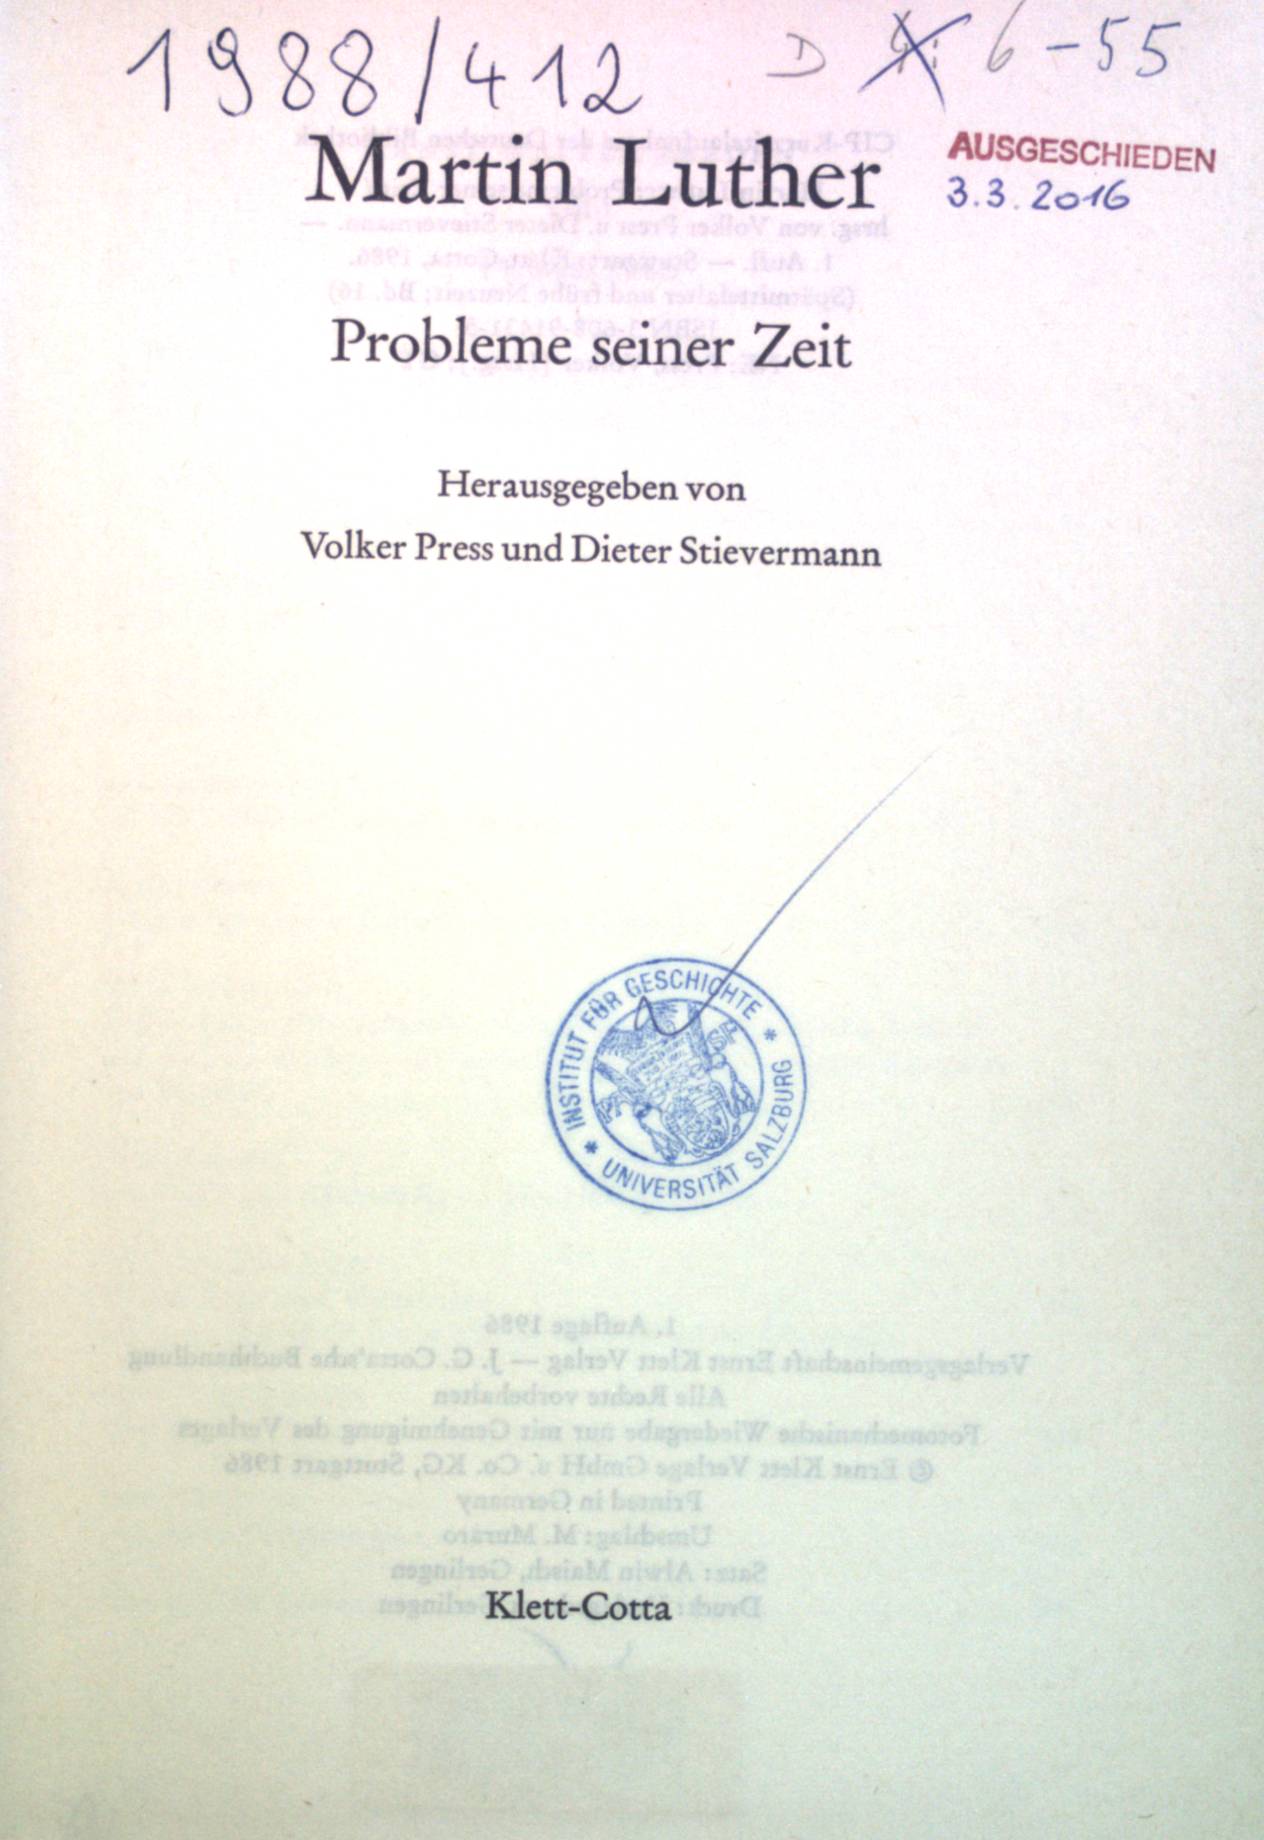 Martin Luther : Probleme seiner Zeit. Spätmittelalter und frühe Neuzeit ; Bd. 16 - Press, Volker